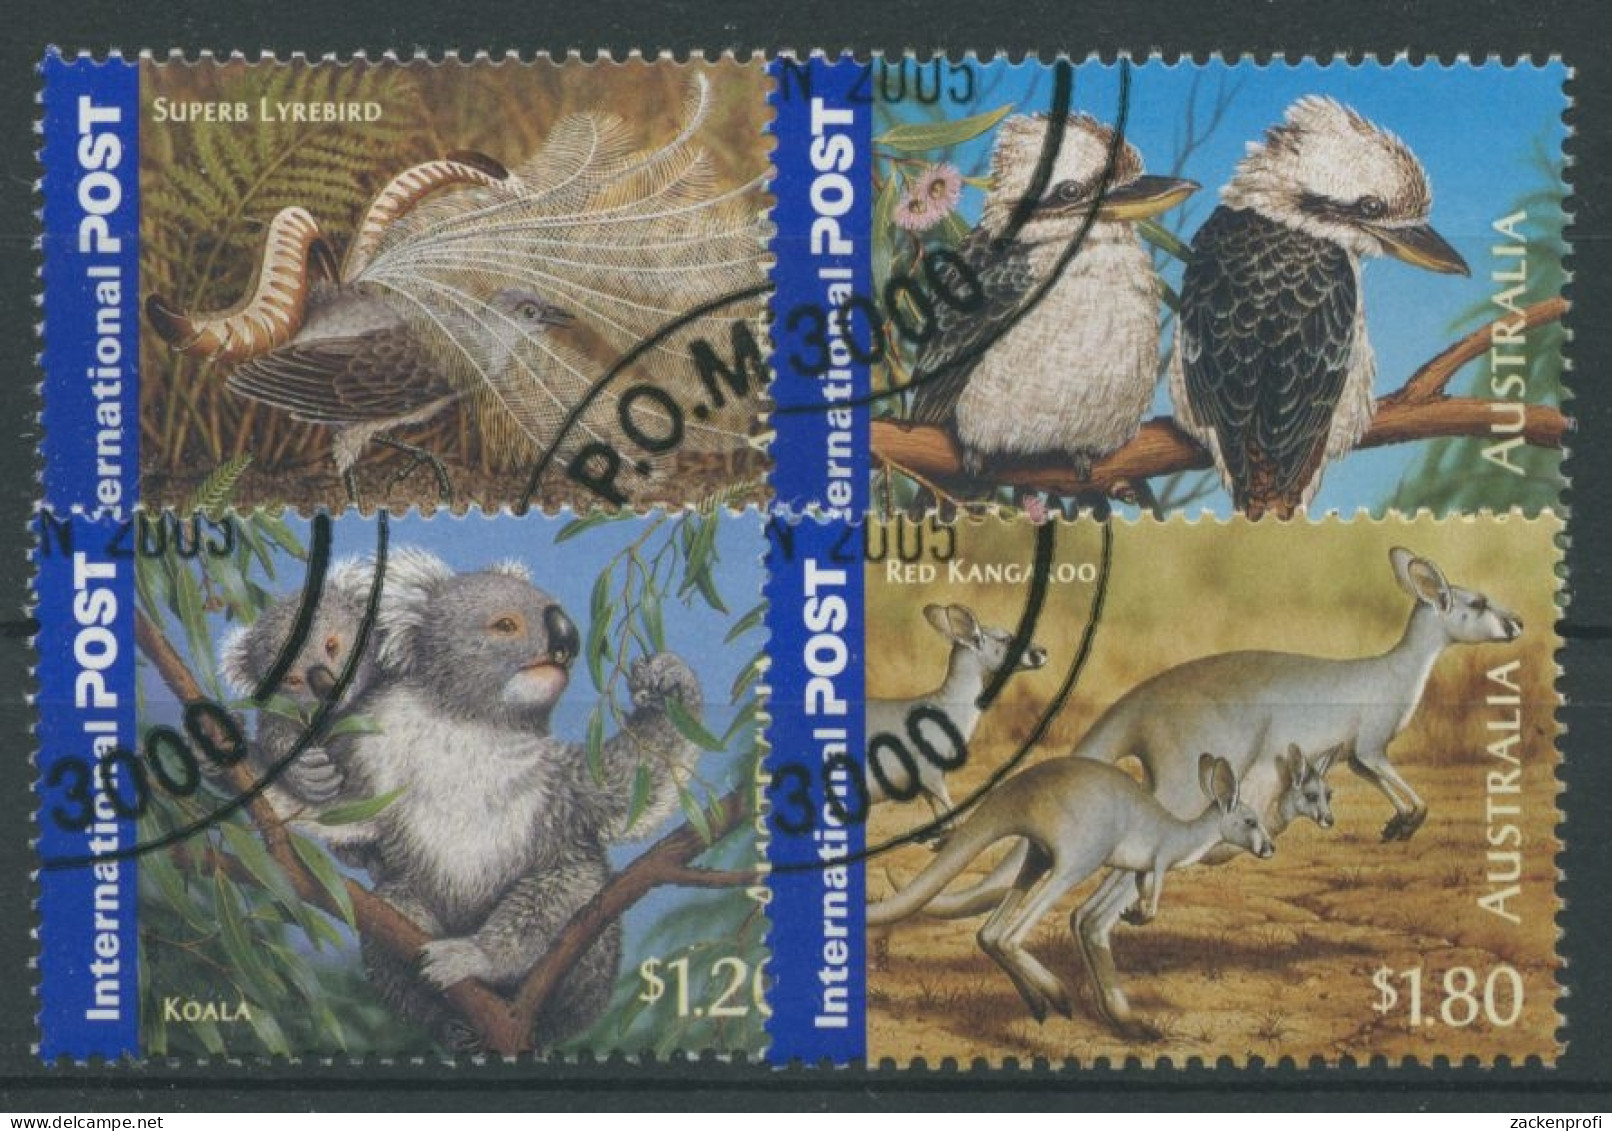 Australien 2005 Wildlebende Tiere Koala Kookaburra Känguruh 2457/60 Gestempelt - Usados